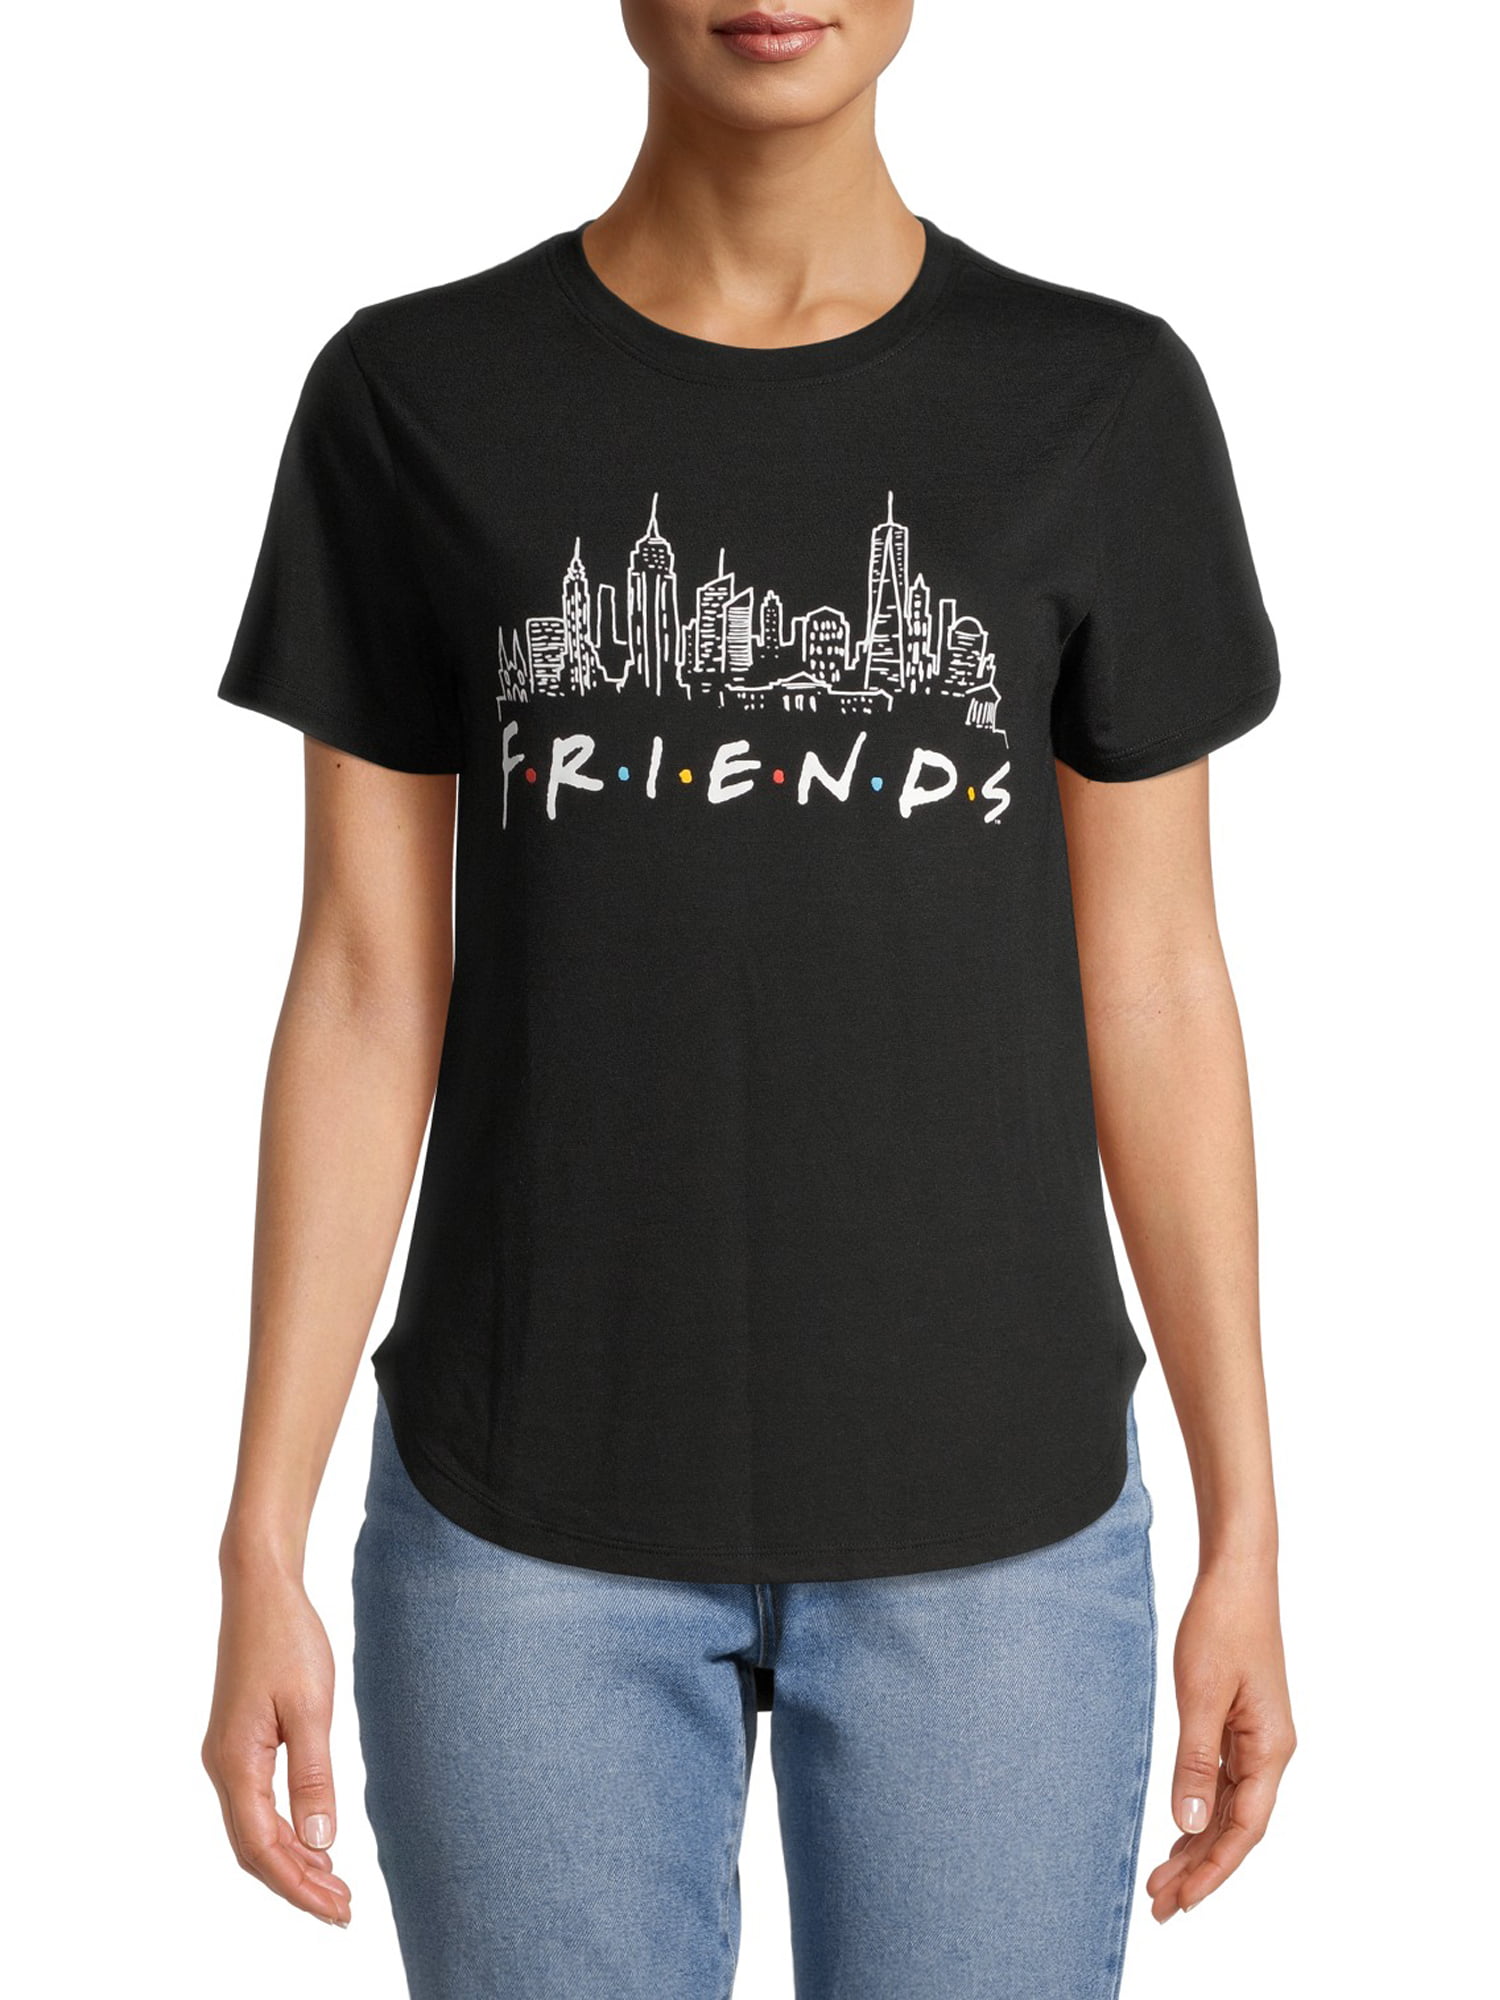 Friends Shirt T-shirt from Friends Tv Show Tee Friends Women`s Top,